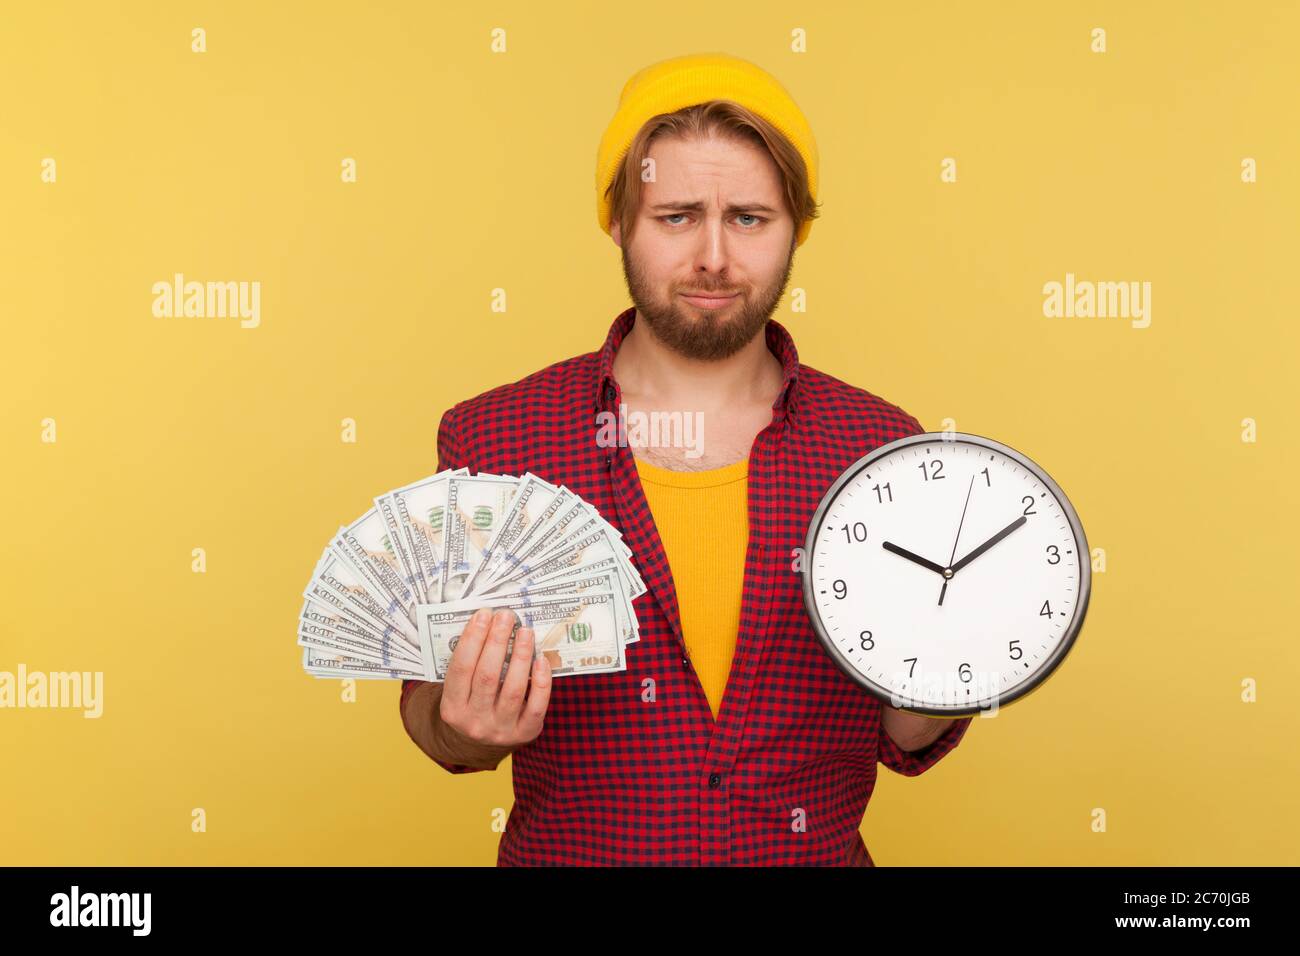 Contrarié hipster barbu gars dans la chemise à carreaux tenant une grande horloge et des billets de dollars, regardant la caméra avec une expression frustrée malheureux, est au sujet de t Banque D'Images